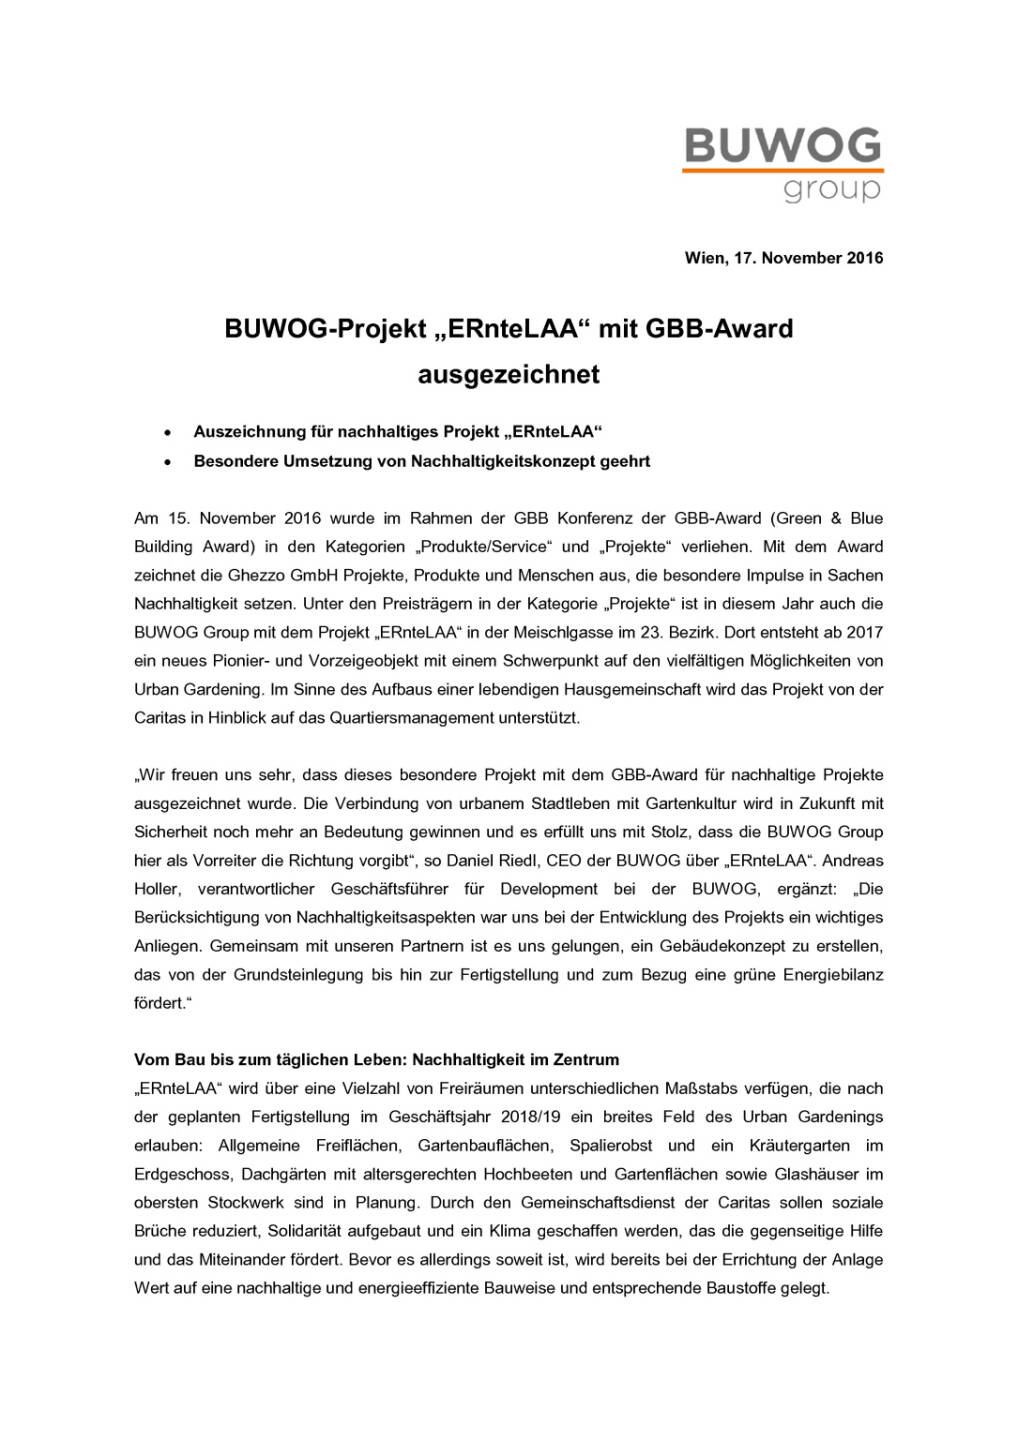 Buwog-Projekt „ERnteLAA“ mit GBB-Award ausgezeichnet, Seite 1/2, komplettes Dokument unter http://boerse-social.com/static/uploads/file_1983_buwog-projekt_erntelaa_mit_gbb-award_ausgezeichnet.pdf